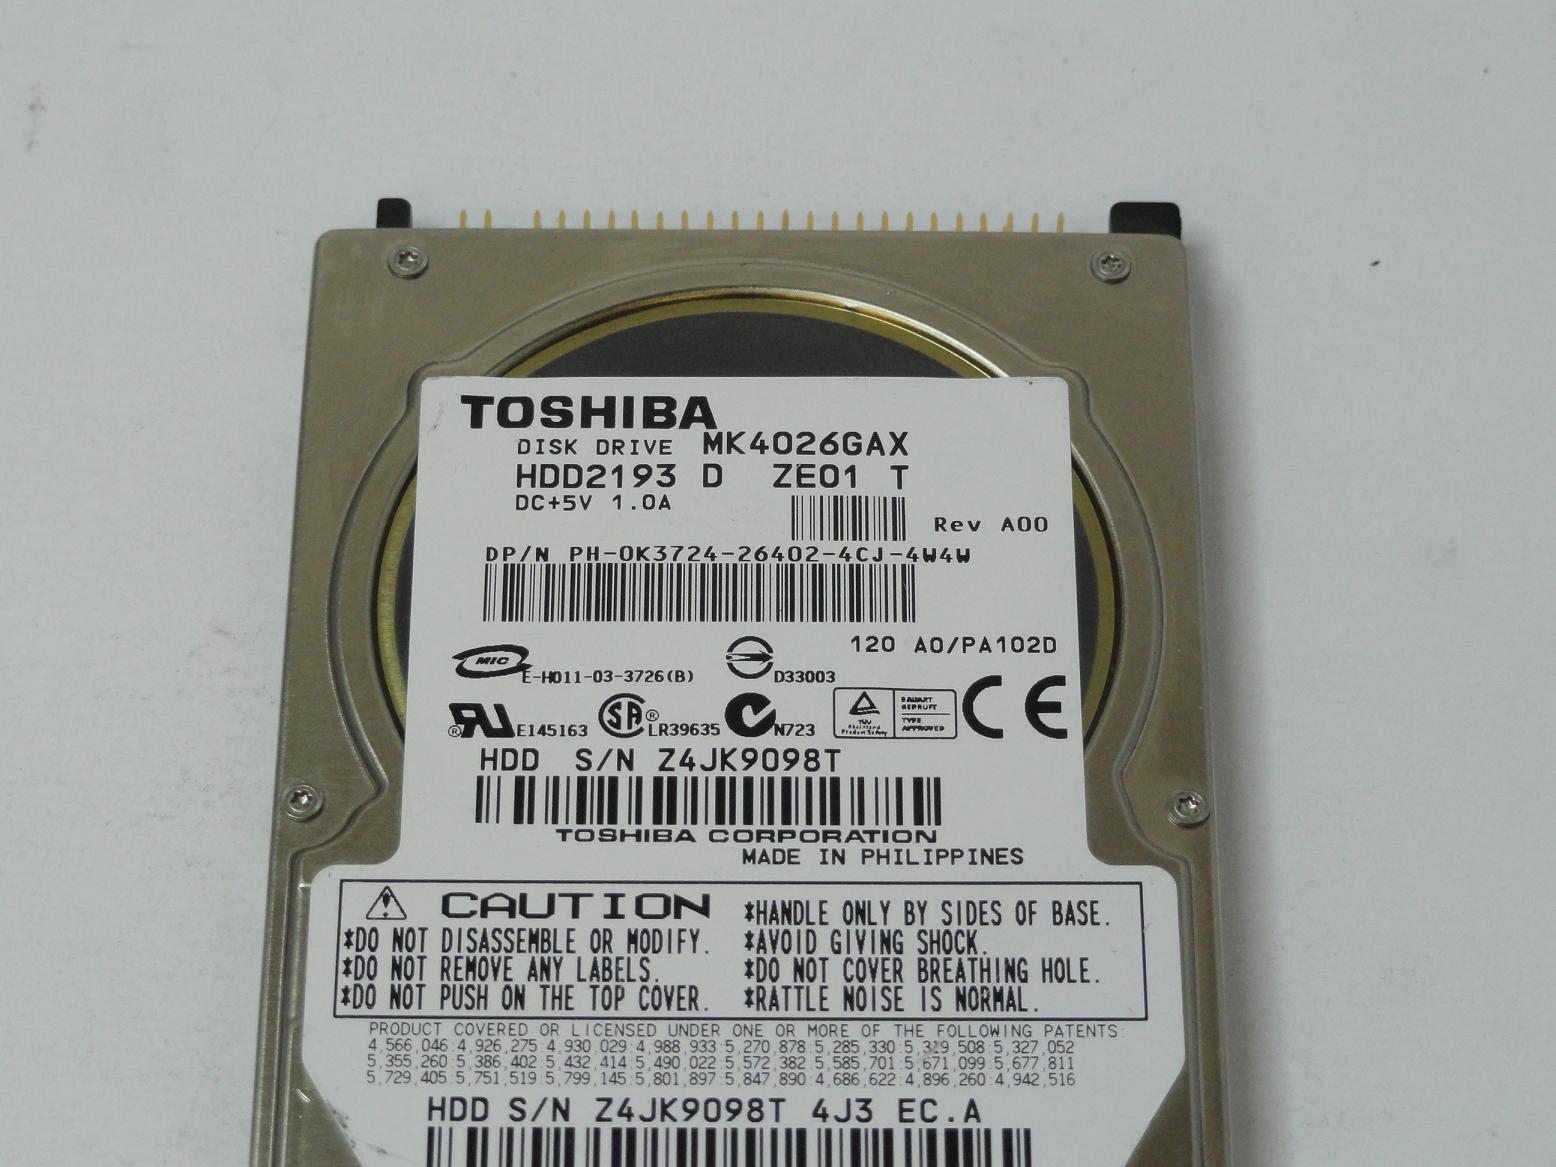 PR12555_MK4026GAX_Toshiba Dell 40GB IDE 5400rpm 2.5in HDD - Image3